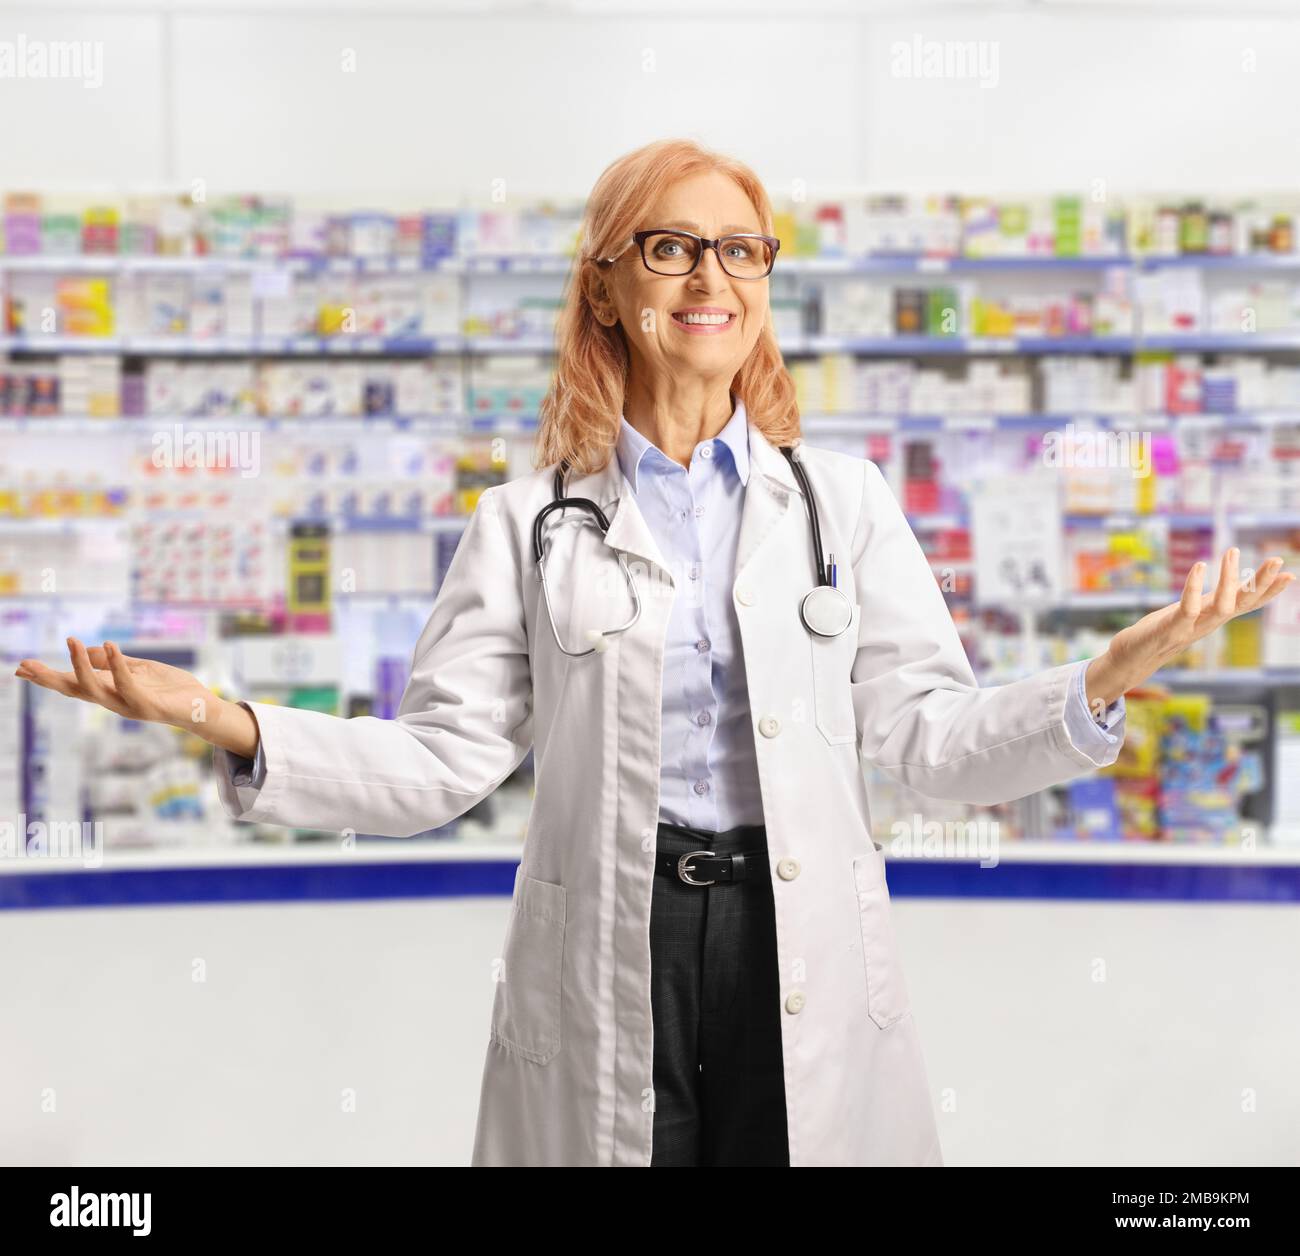 Femme chimiste souriant et gestant avec les mains à l'intérieur d'une pharmacie Banque D'Images